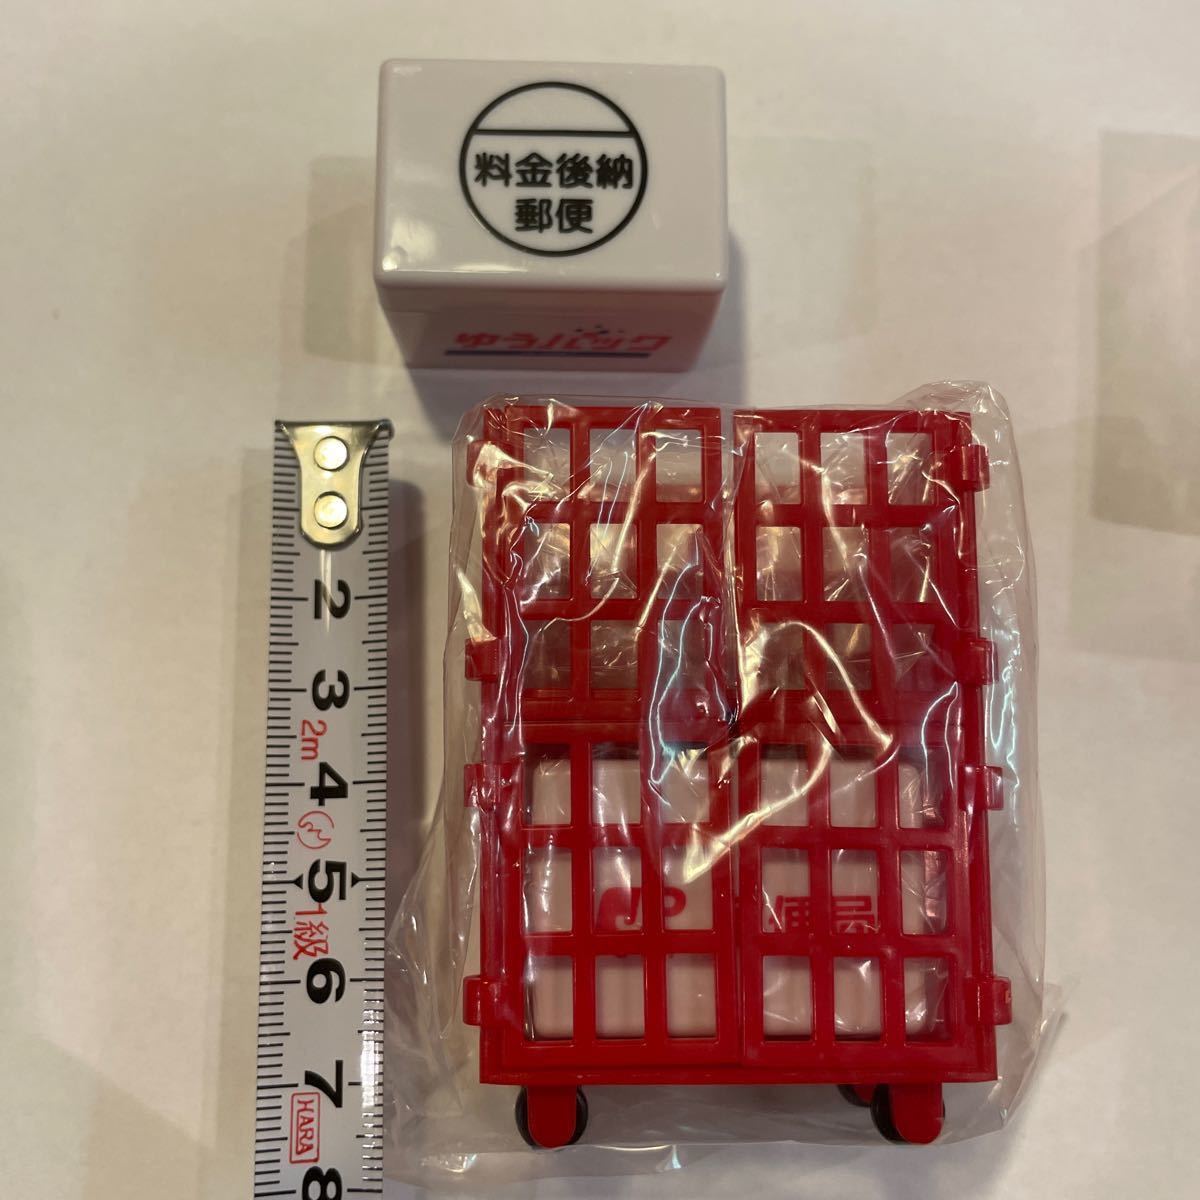 【非売品】郵便局 ロールパレット型スタンプセット ミニサイズ